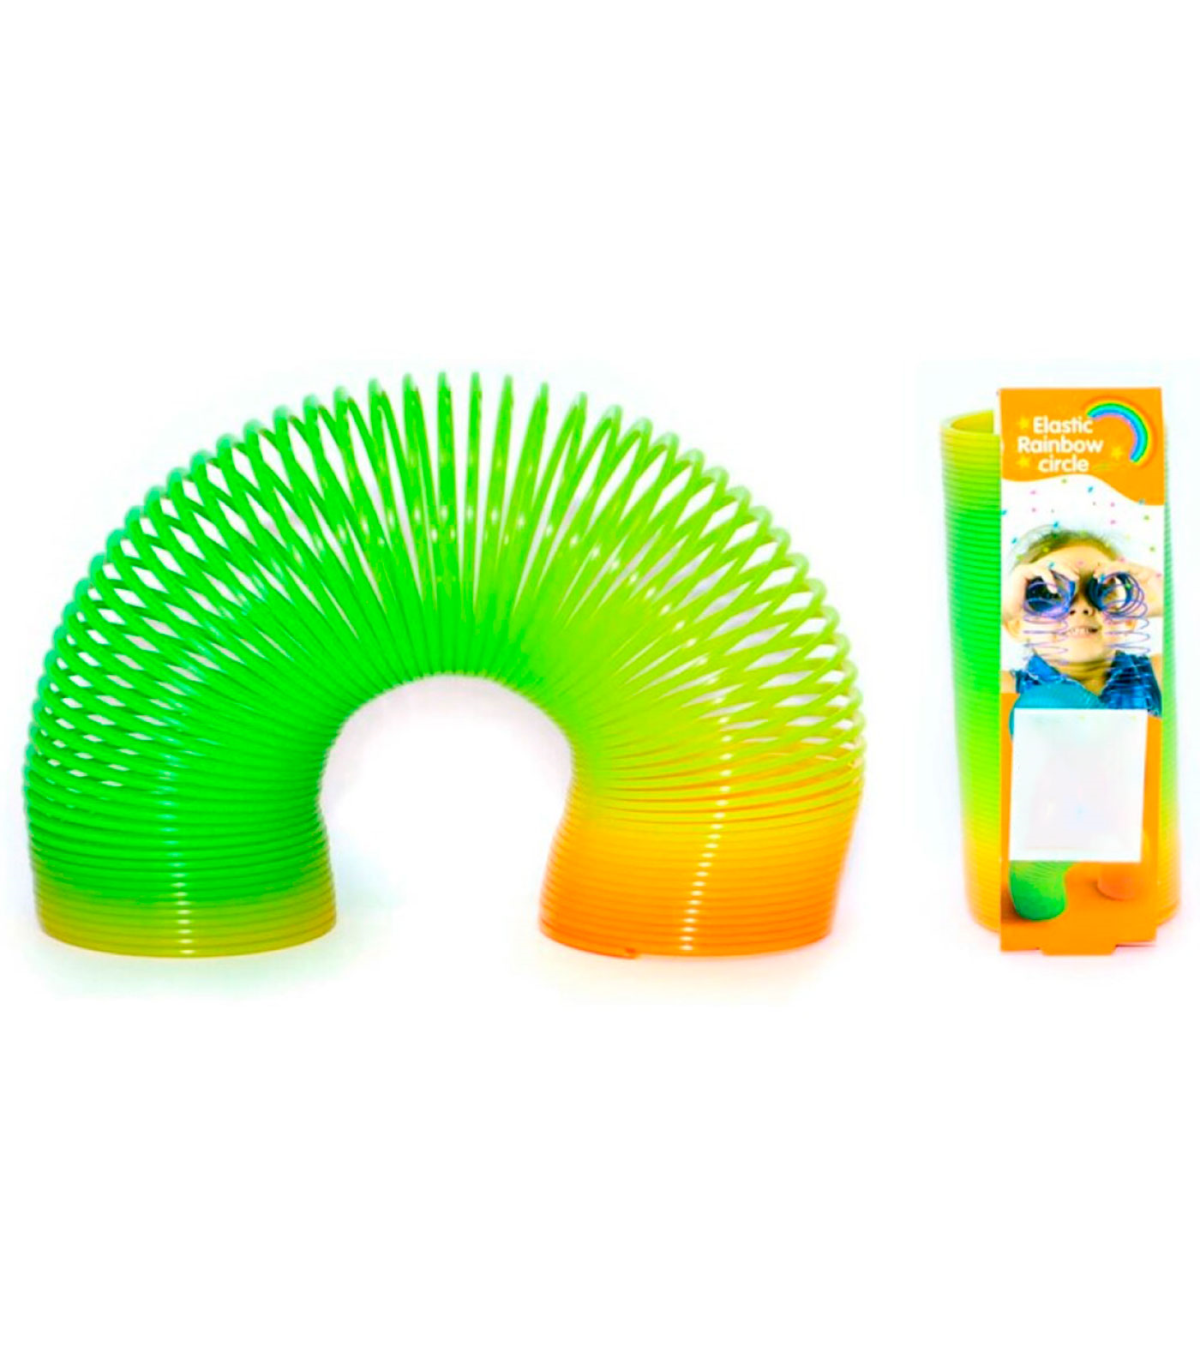 Tradineur - Muelle arco iris gigante, muelle, resorte arcoiris, juego,  juguete para niños, dimensiones cerrado 10 x 9 cm